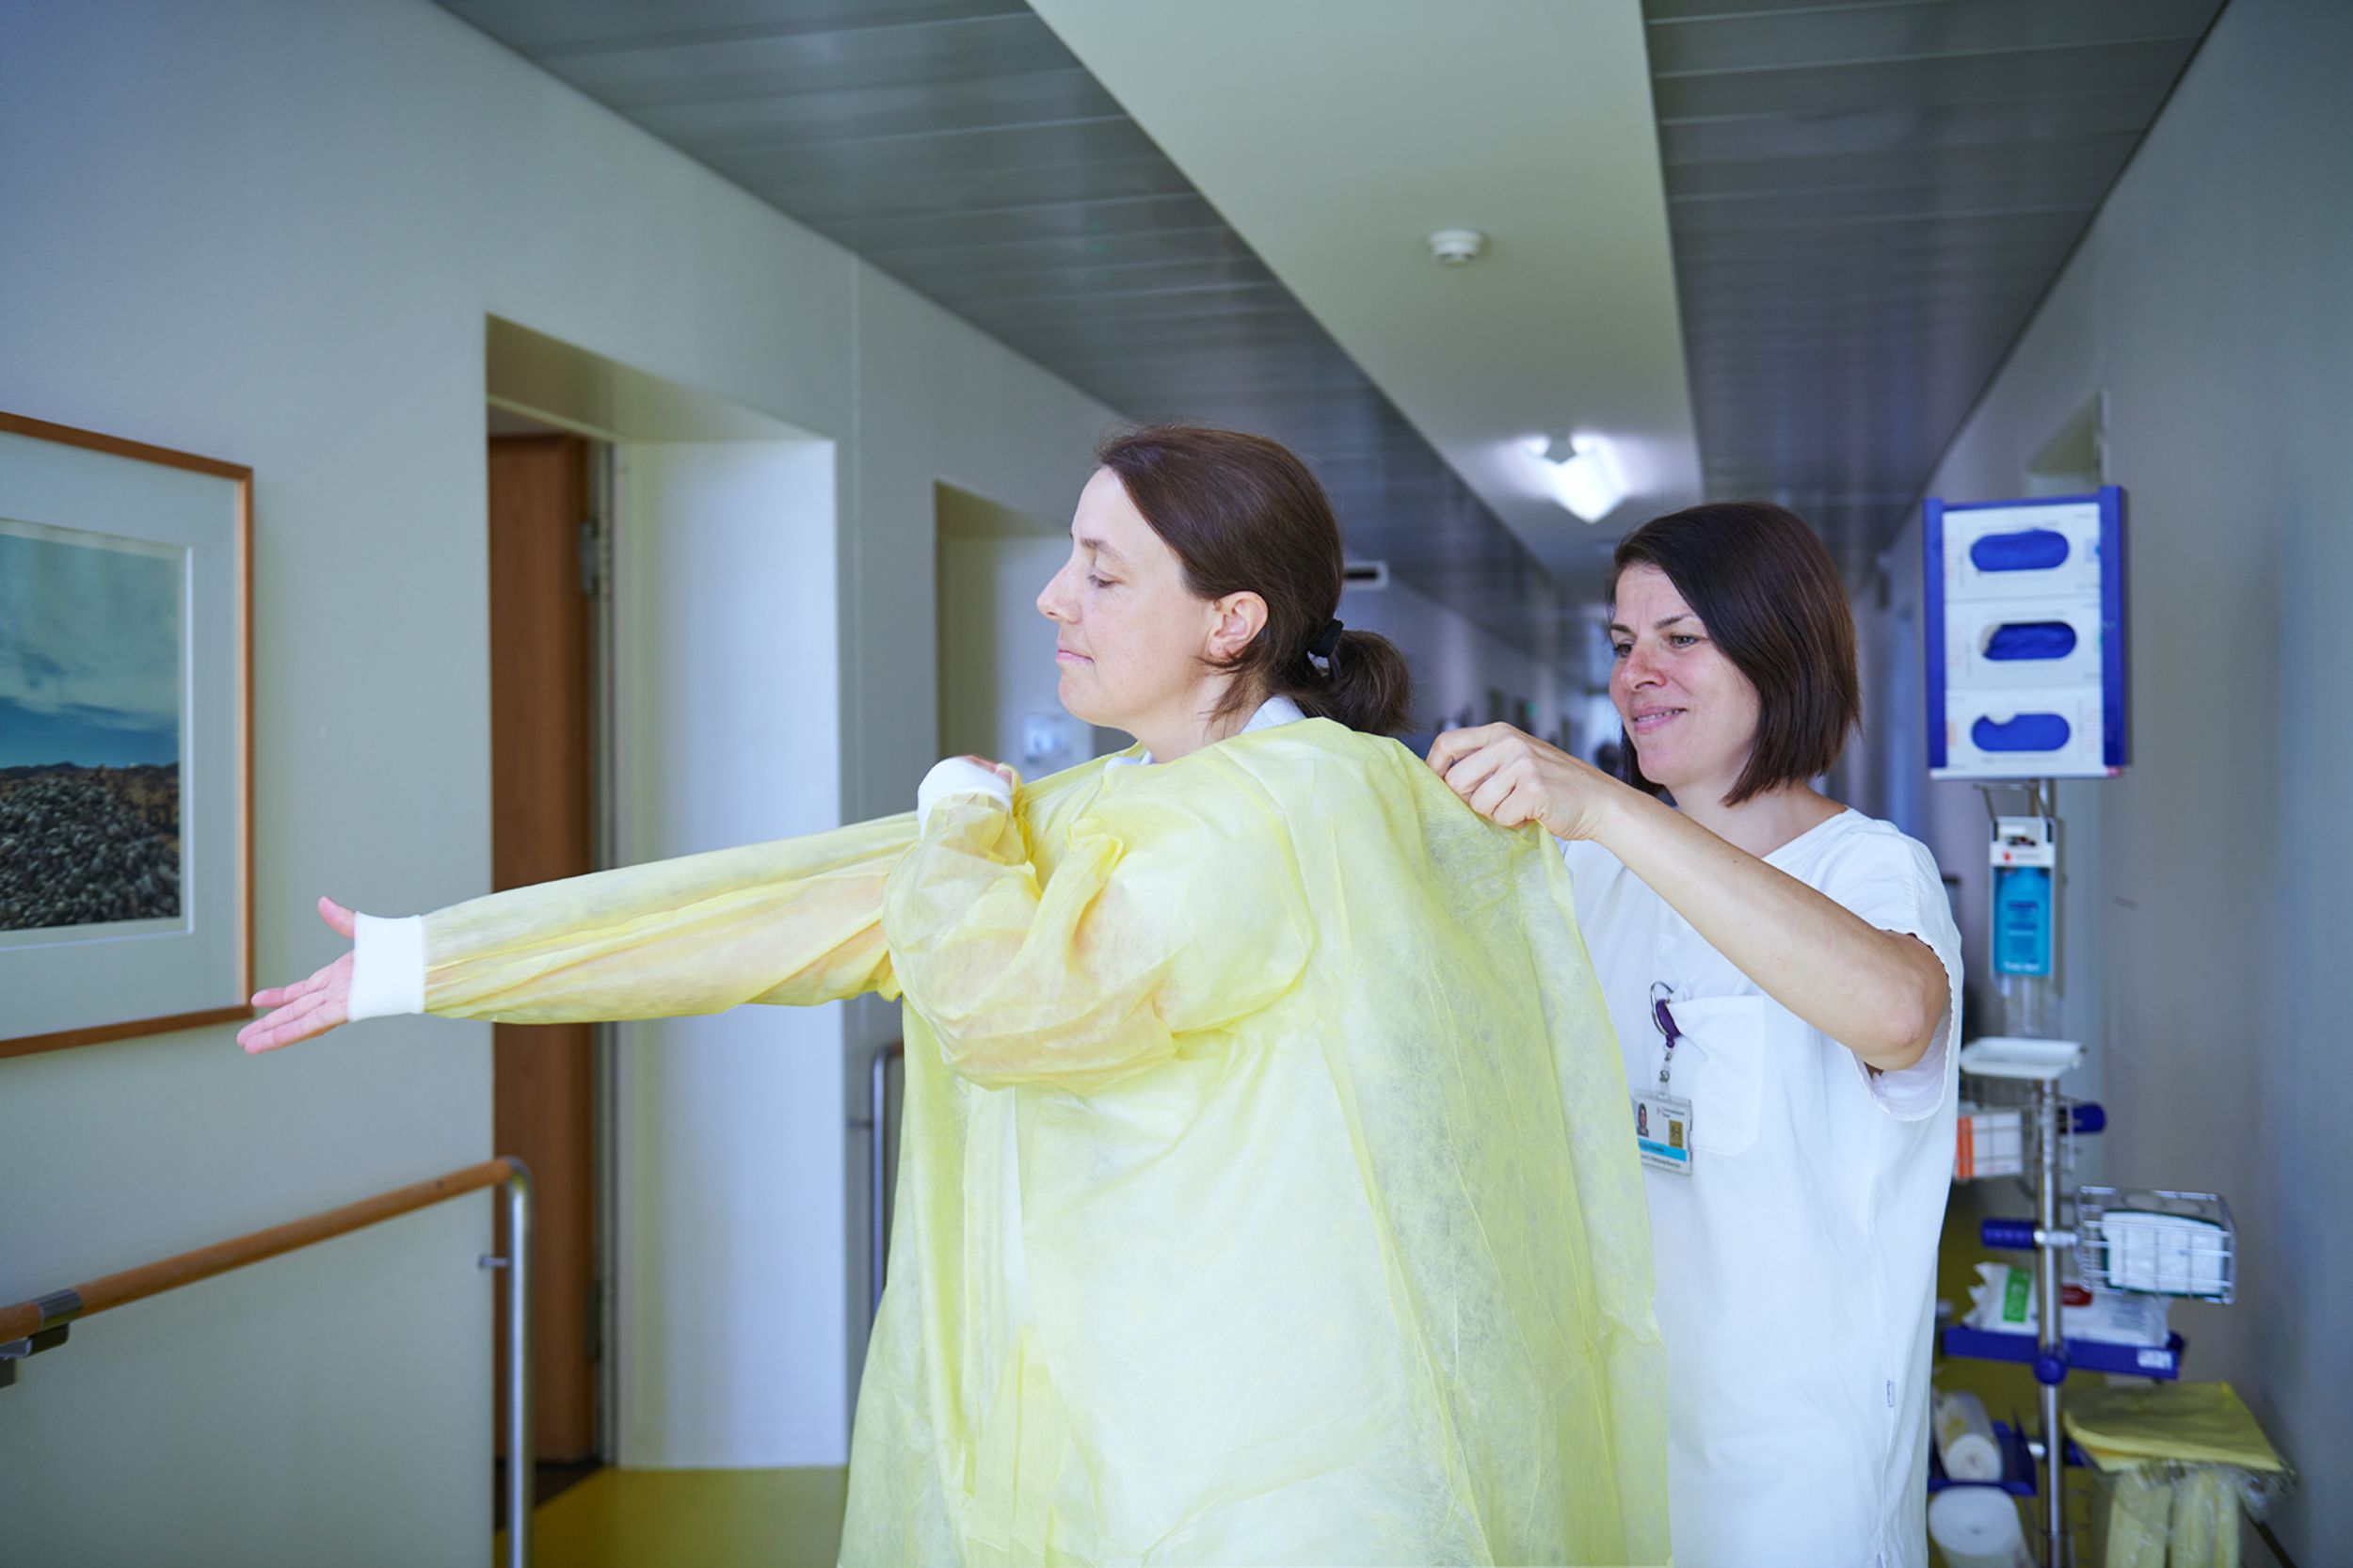 Deux collaboratrices du service d'hygiène hospitalière s'aident mutuellement à enfiler des vêtements de protection